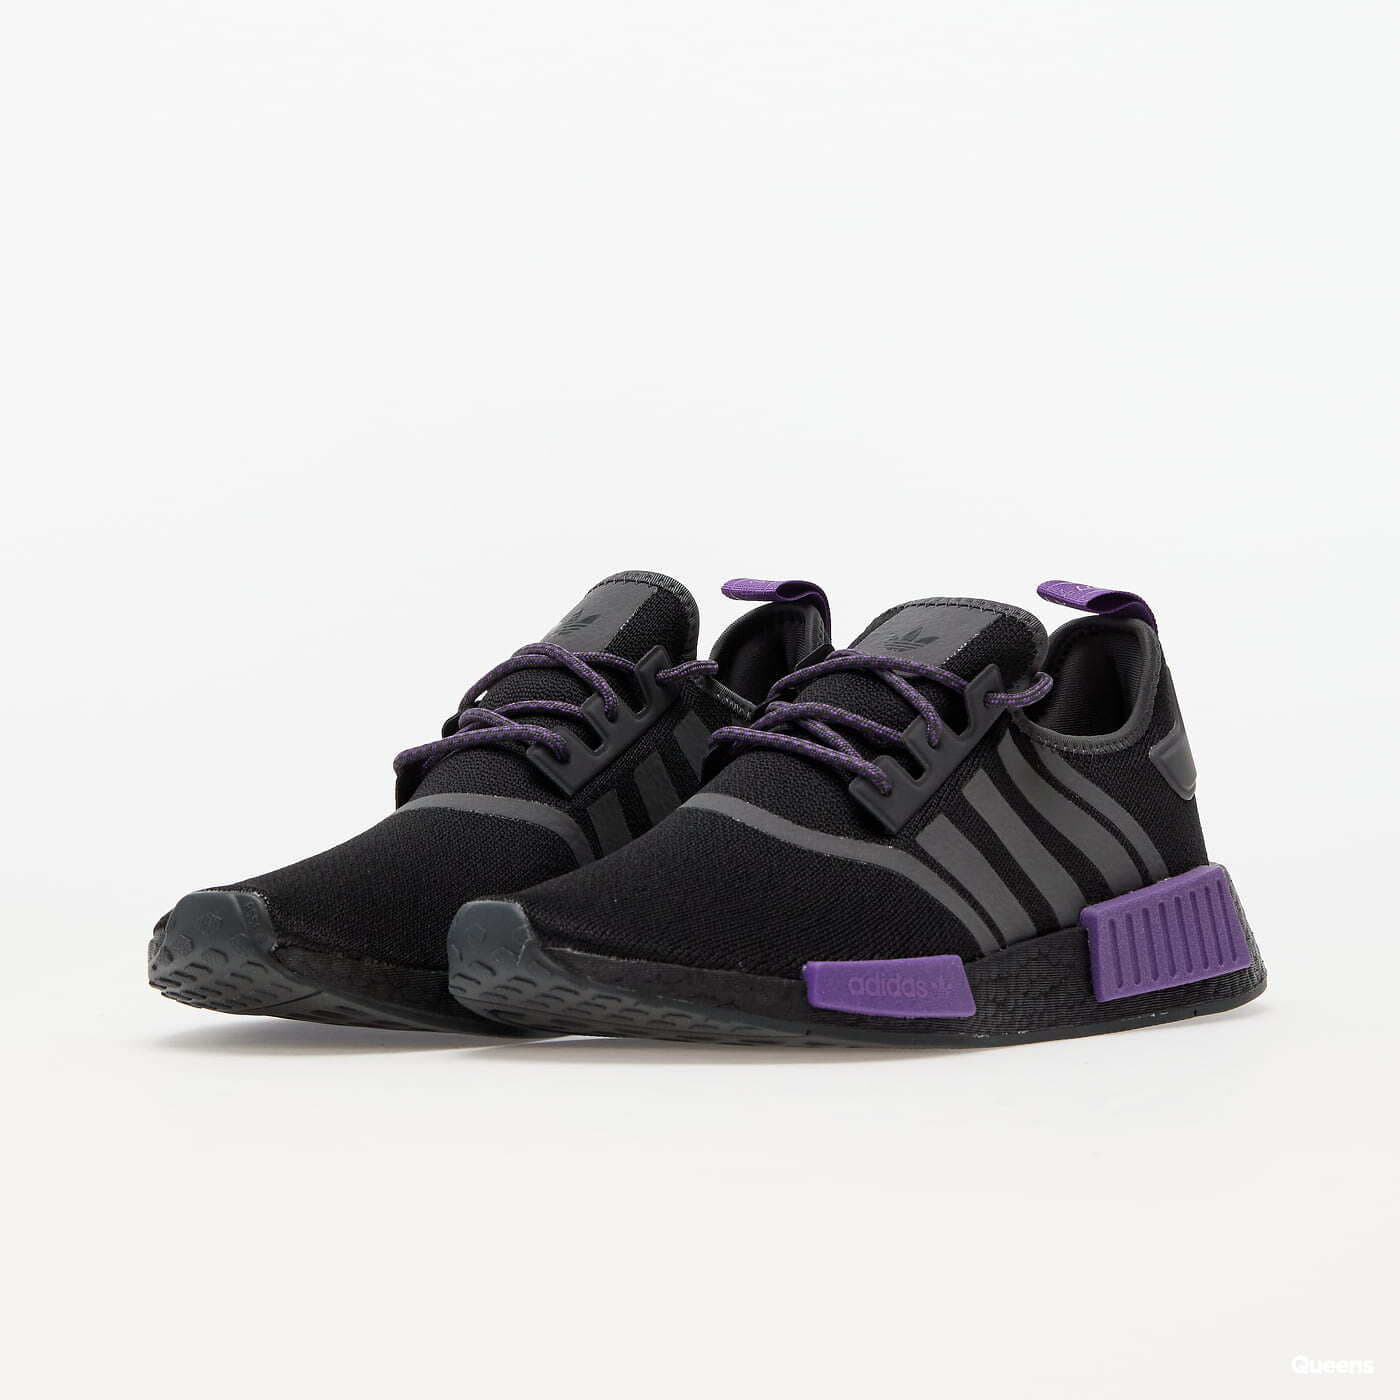 Herensneakers en -schoenen adidas Originals NMD_R1 Core Black/ Grey Five/ Active Purple